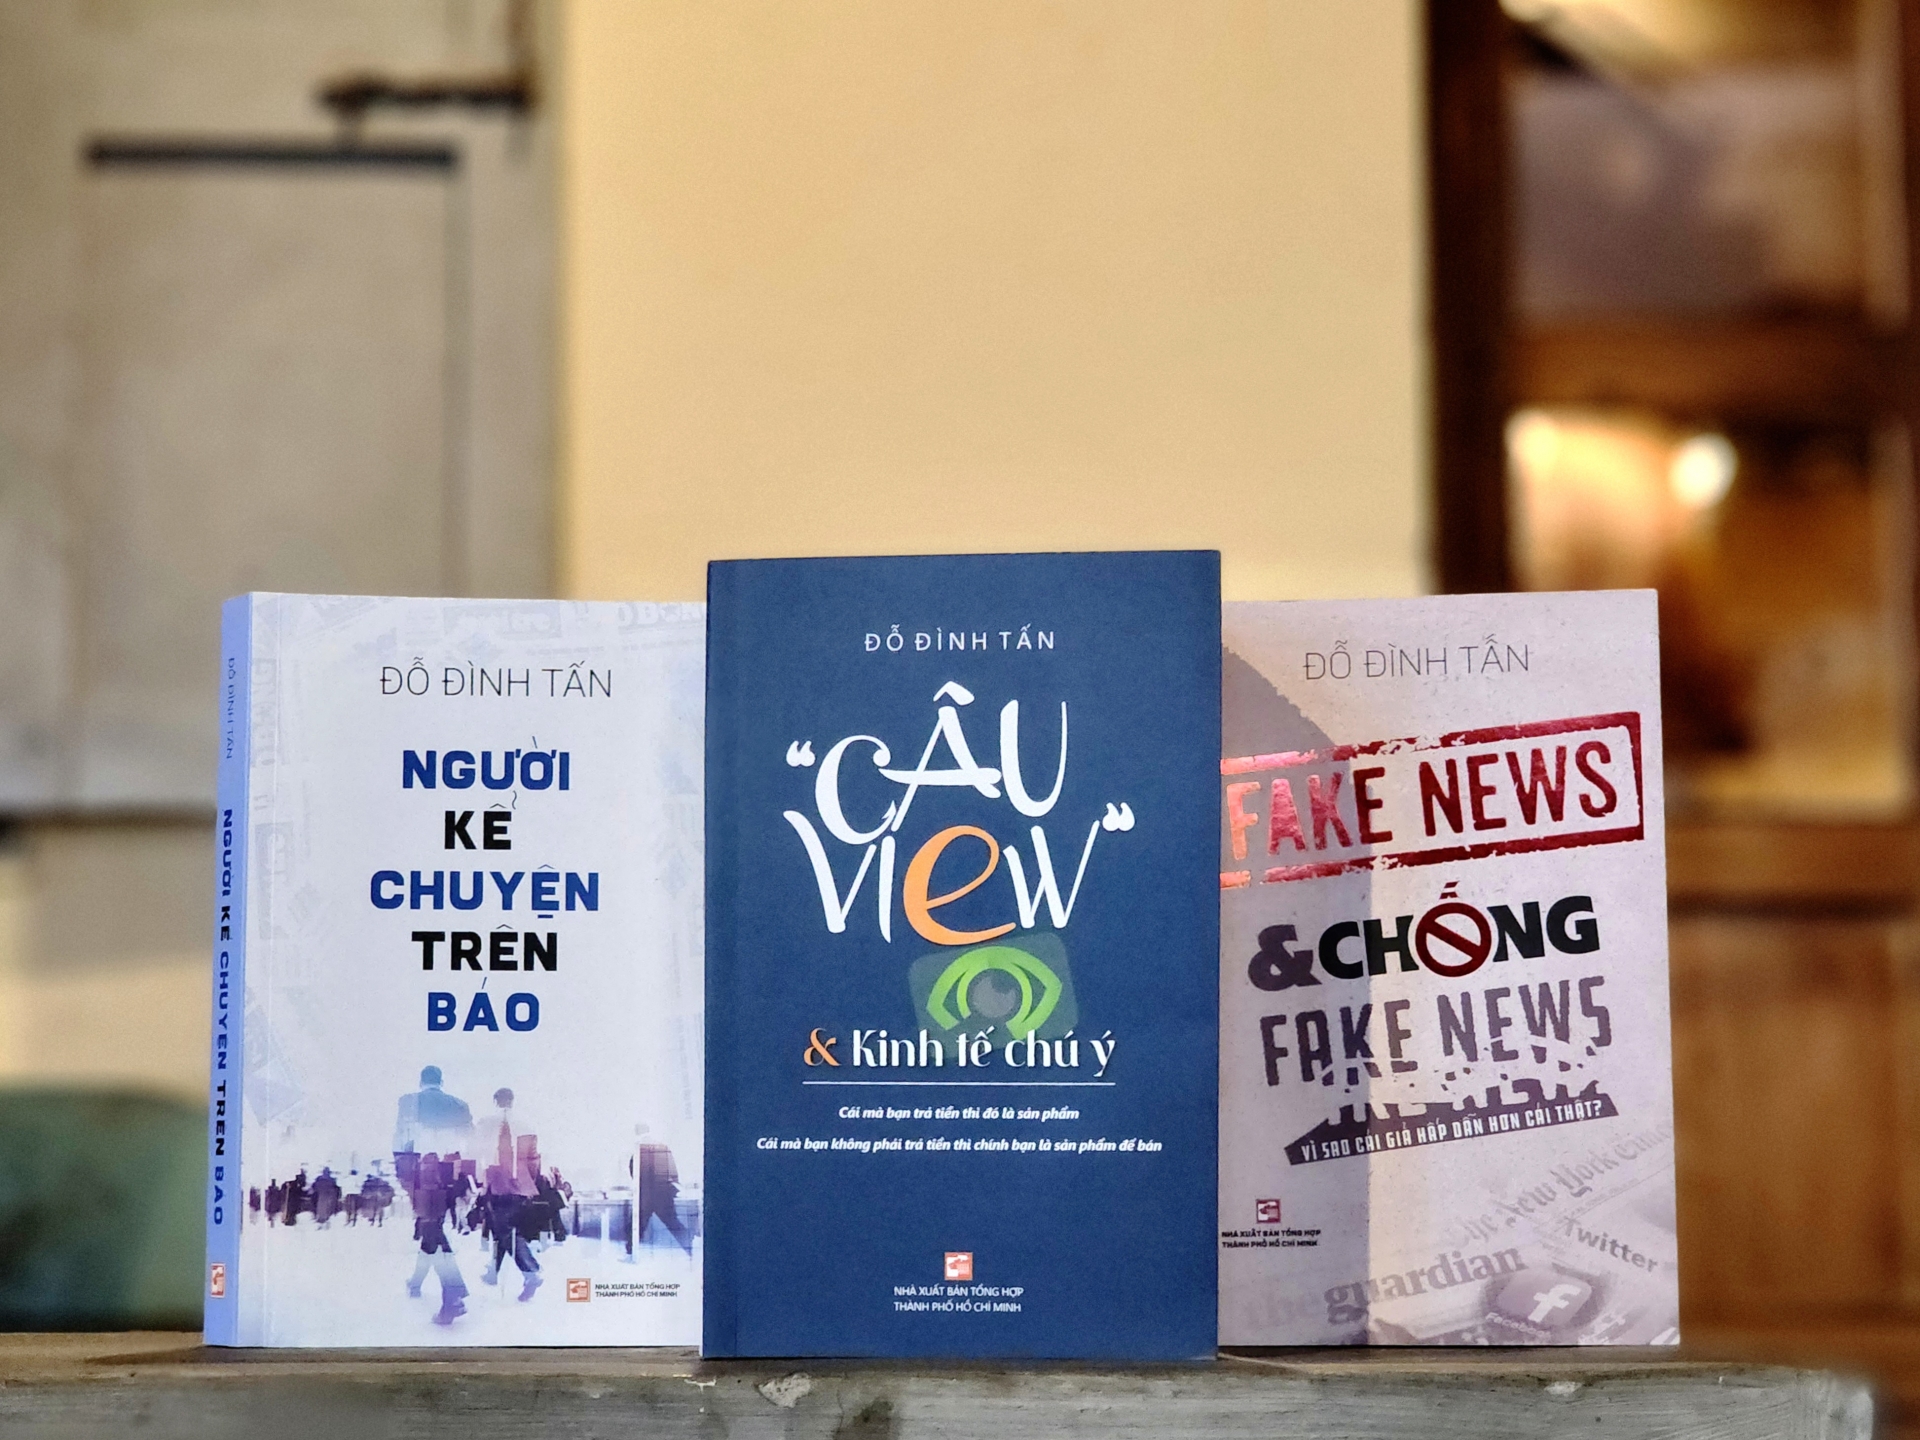 Ra mắt sách “Câu view và kinh tế chú ý” nhân kỷ niệm 99 năm Ngày Báo chí Cách mạng Việt Nam